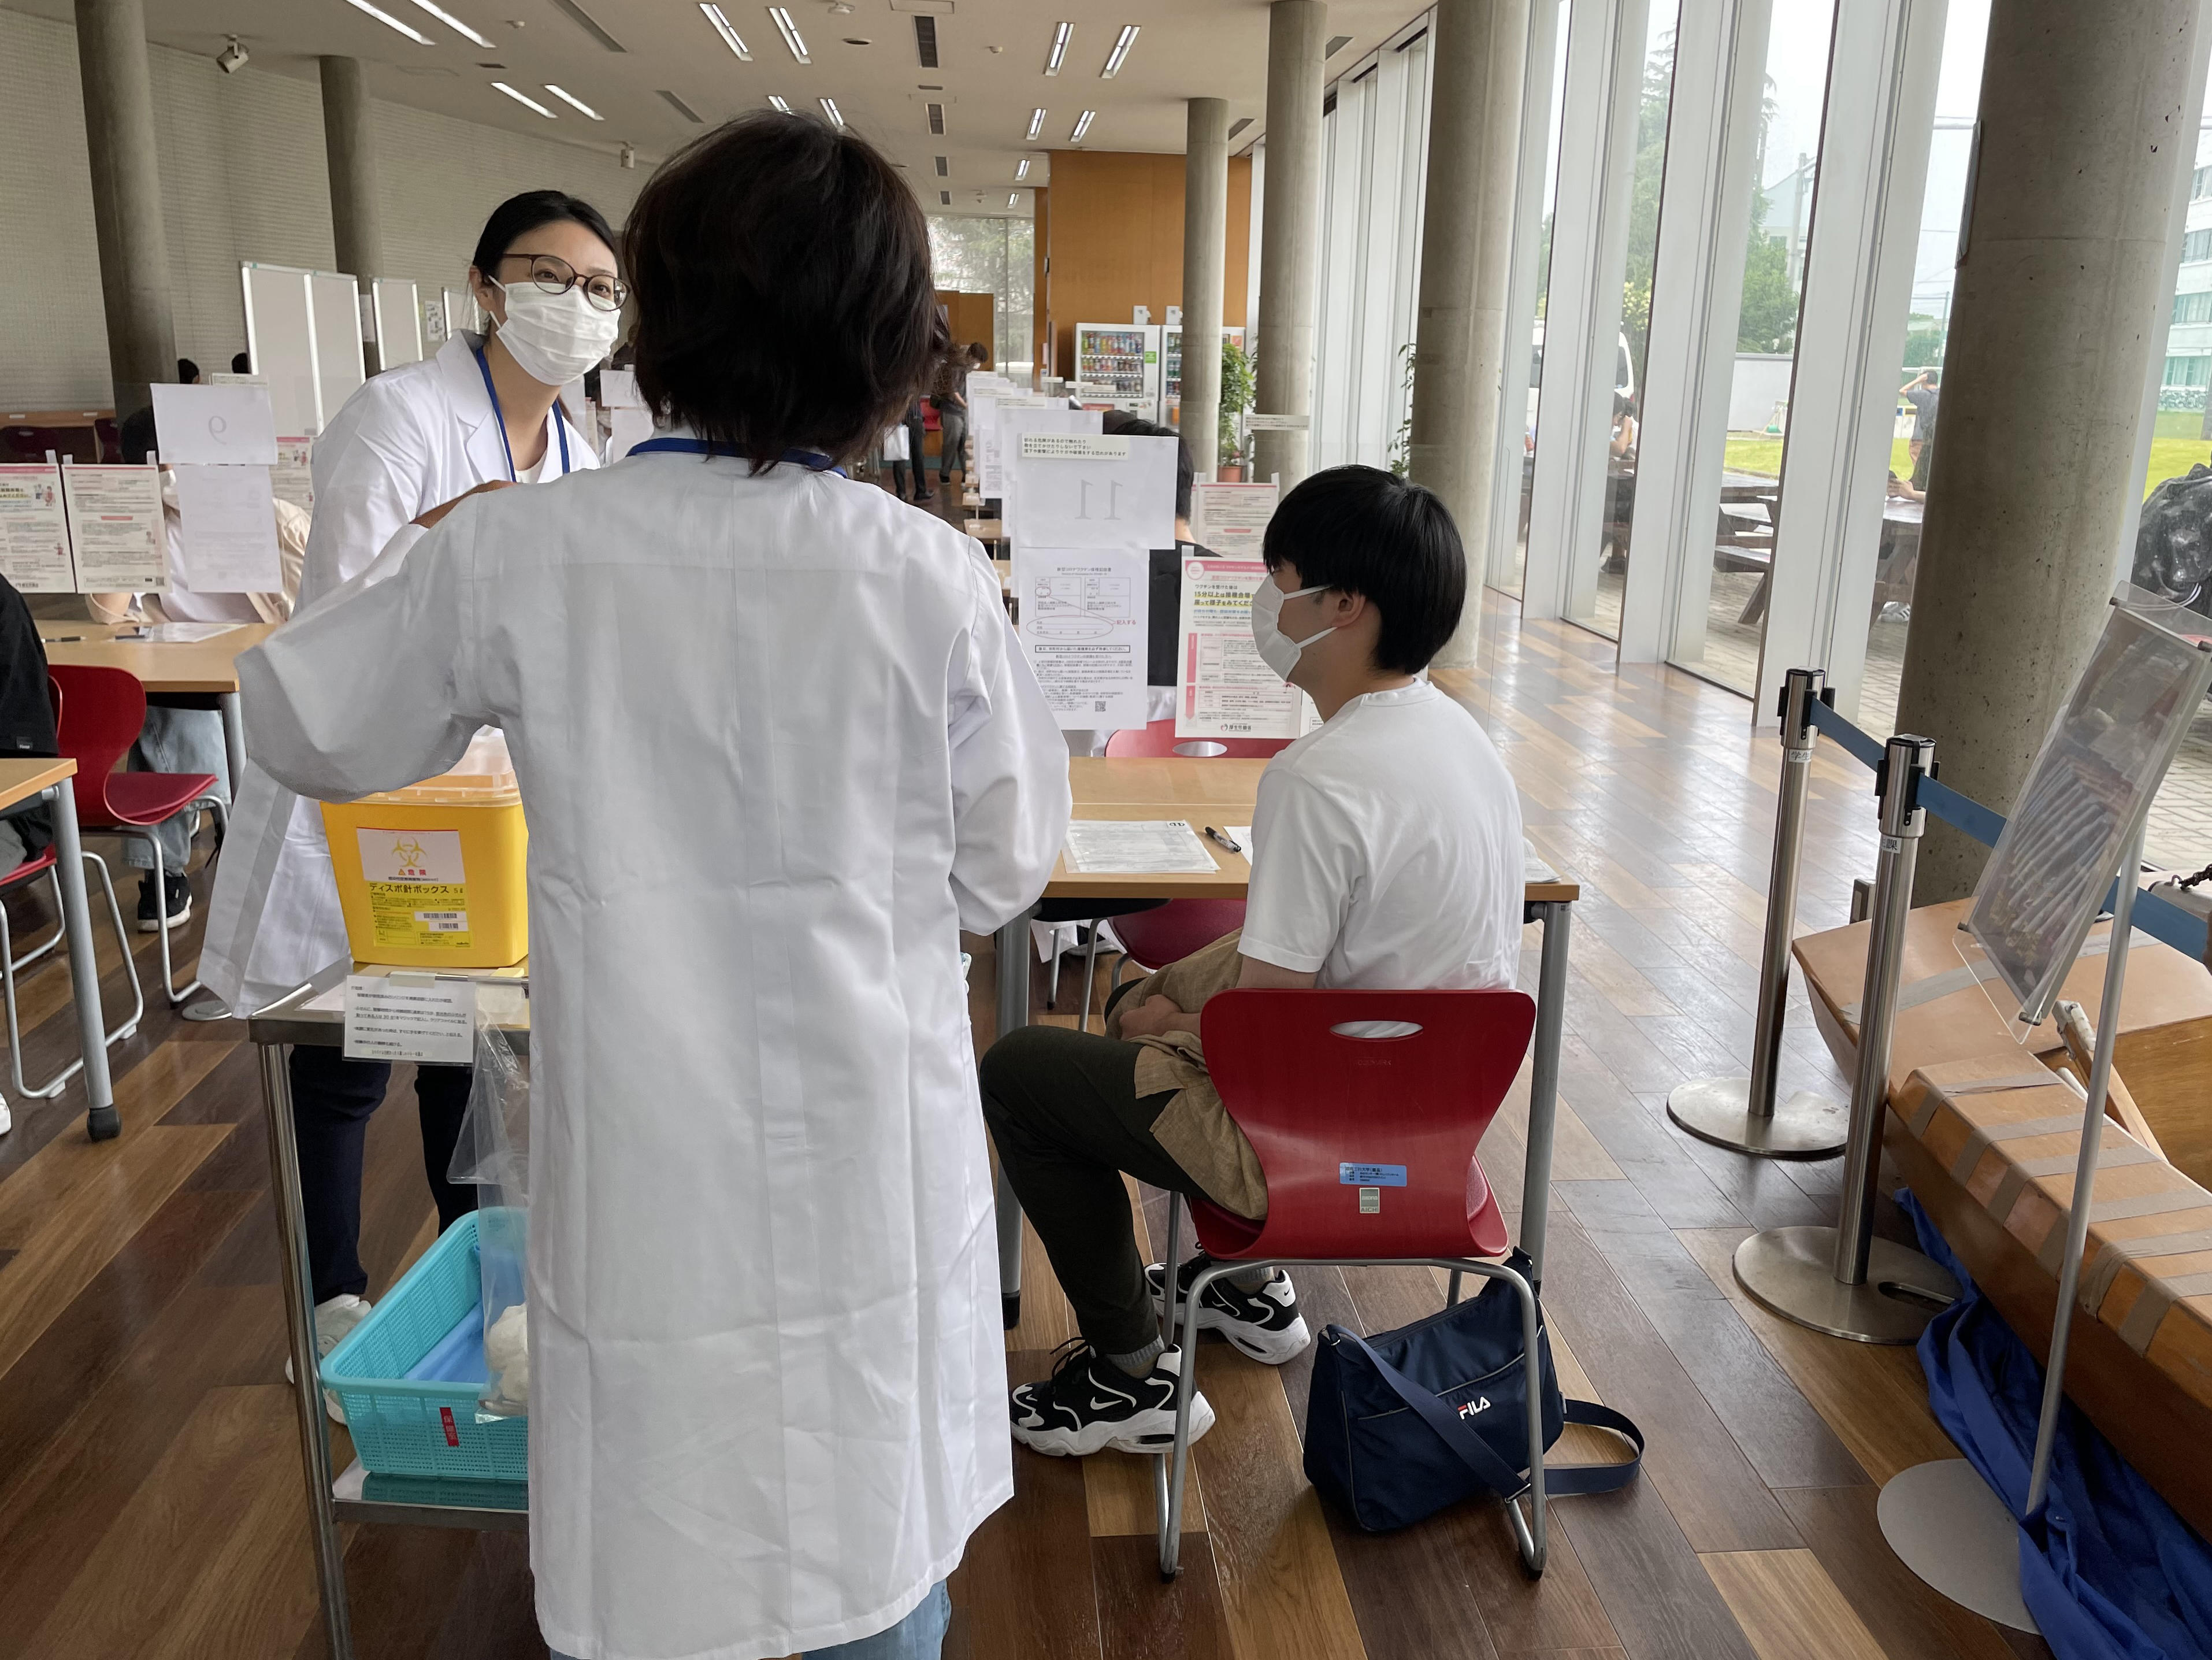 湘南工科大学が新型コロナウイルスワクチンの職域接種を2,700人分完了 -- 目標としていたワクチン廃棄ゼロも達成